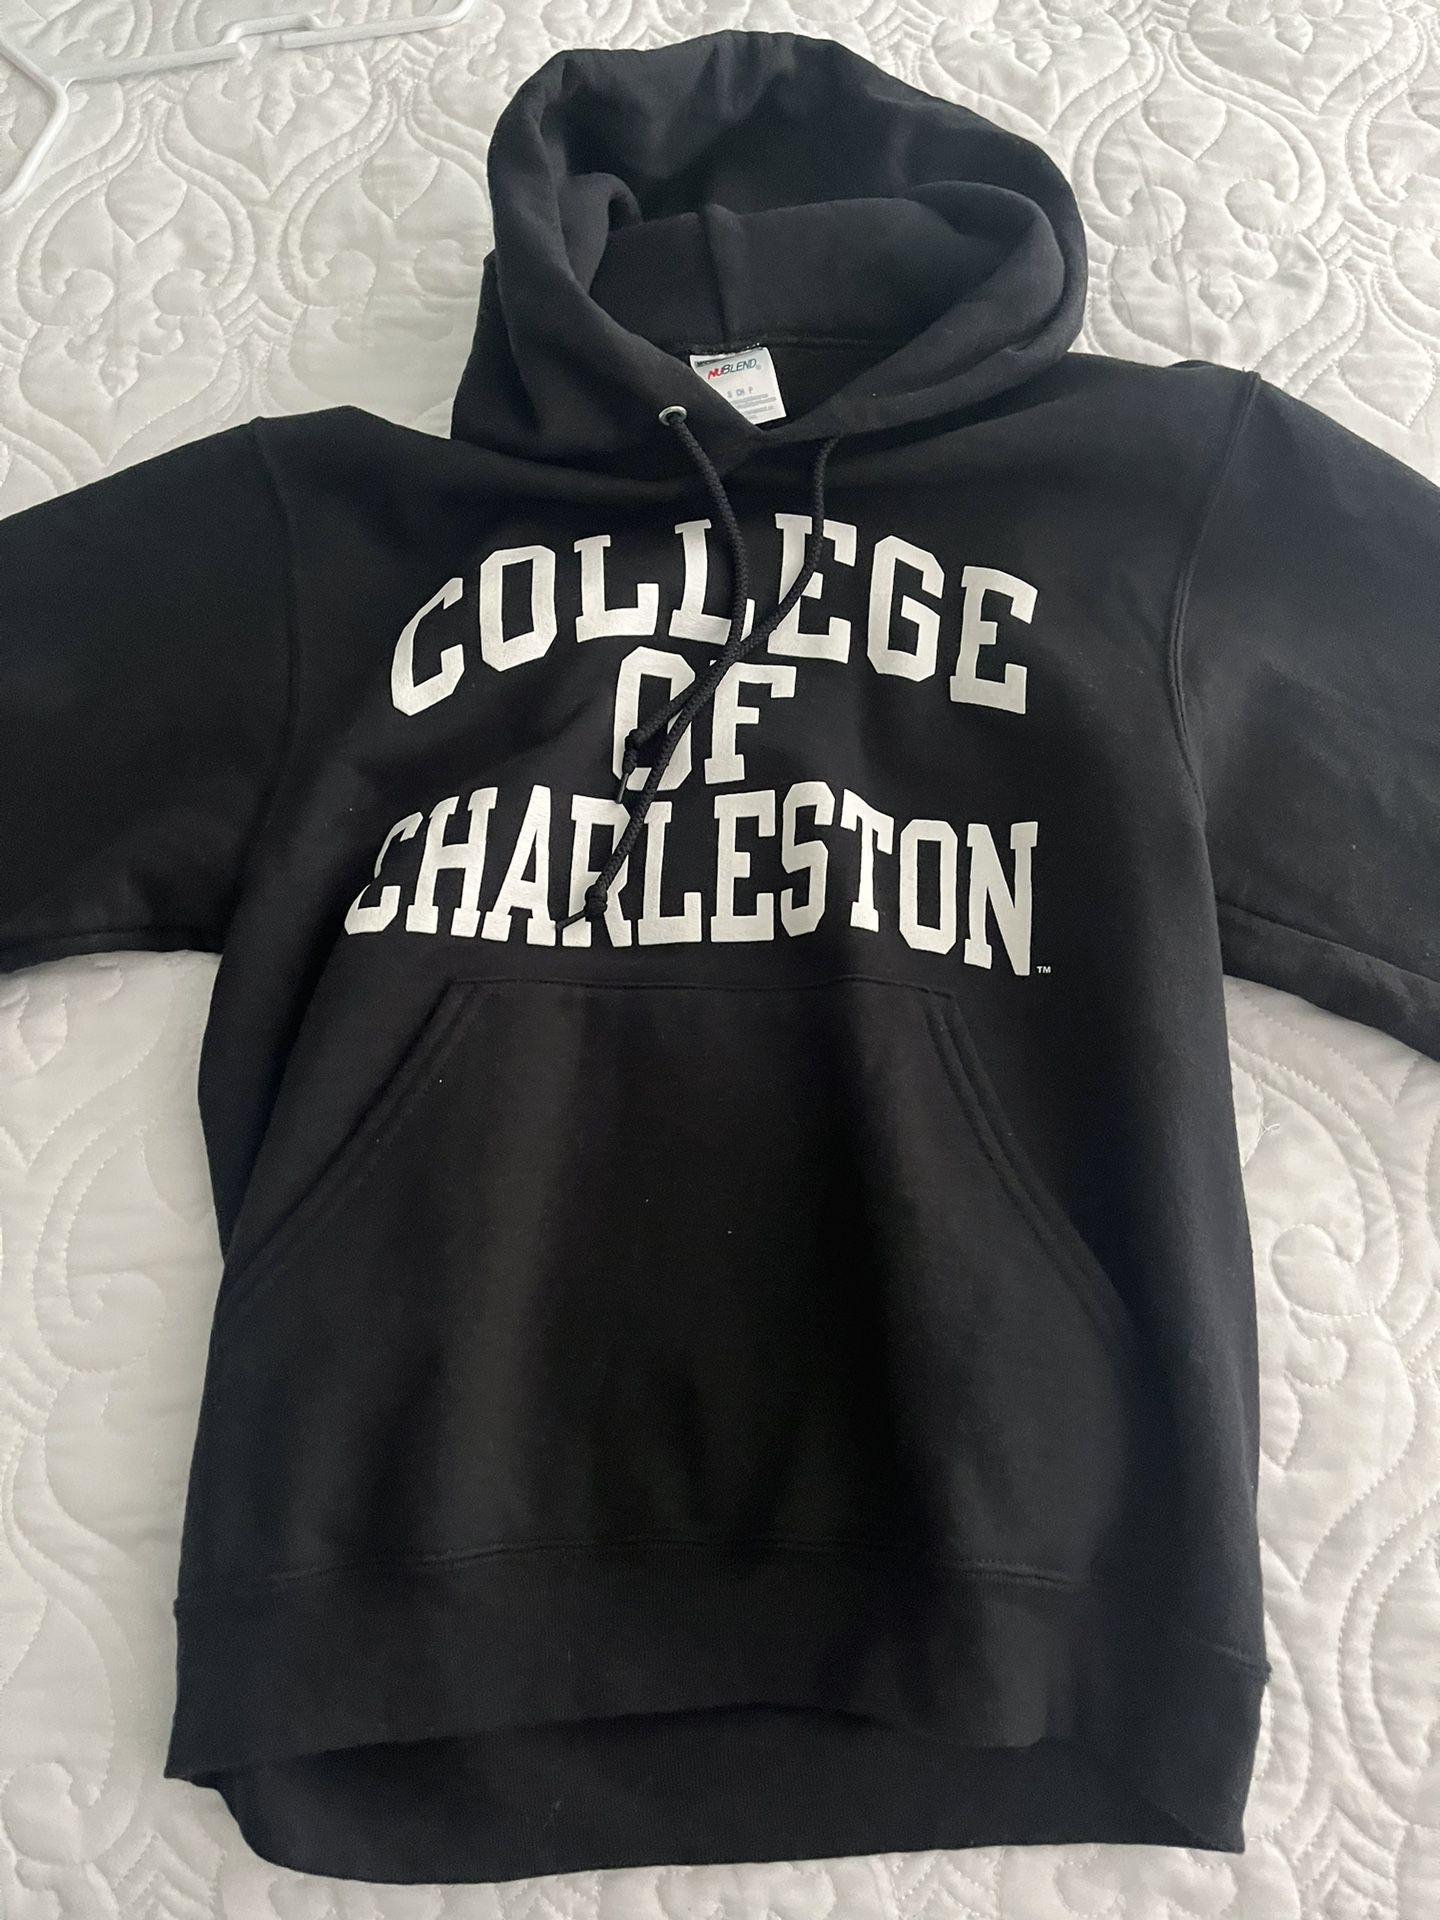 College of Charleston sweatshirt and T-shirt